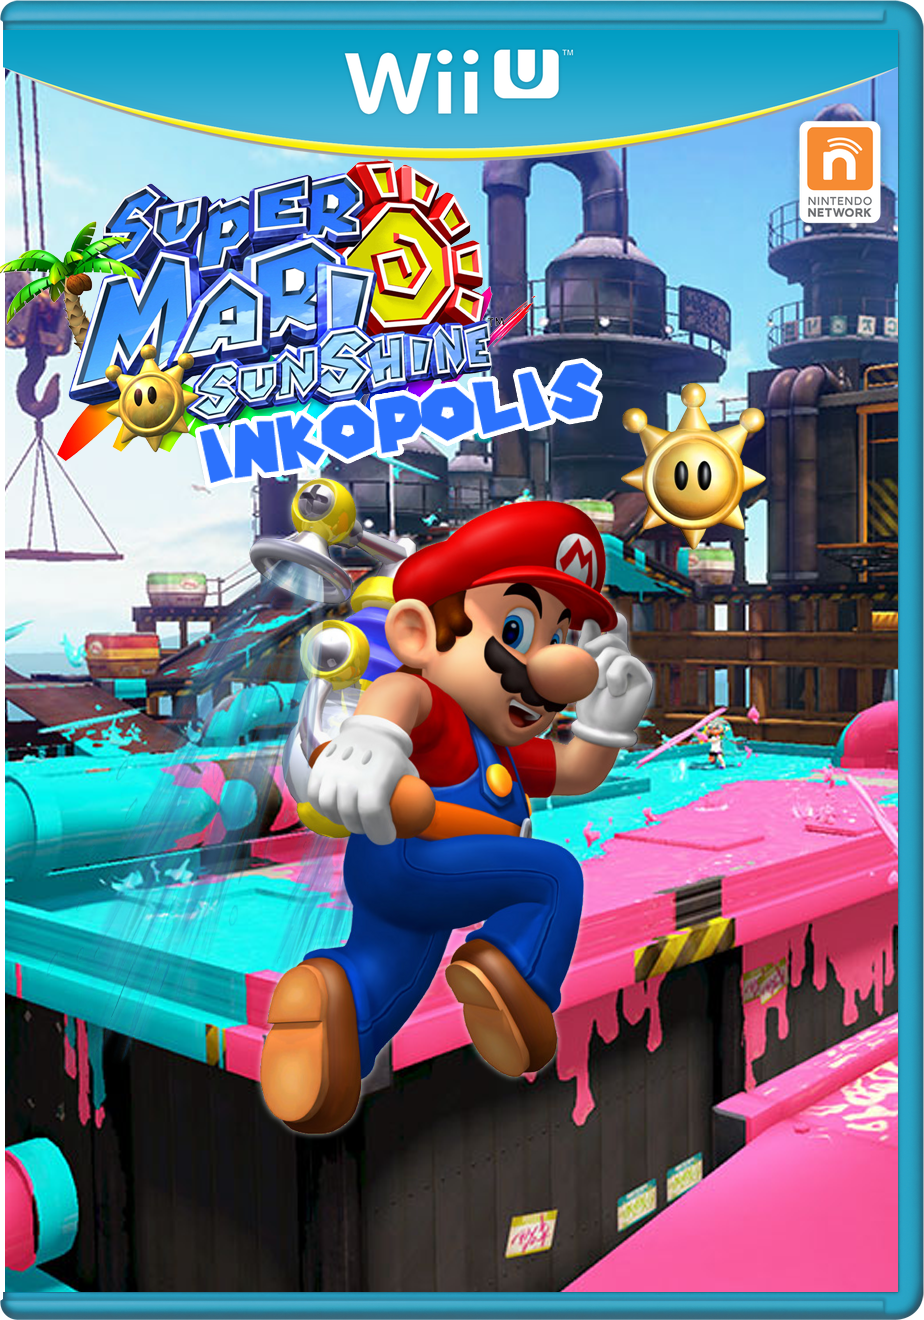 Super Mario Sunshine: Inkopolis - Nintendo Mashup Games